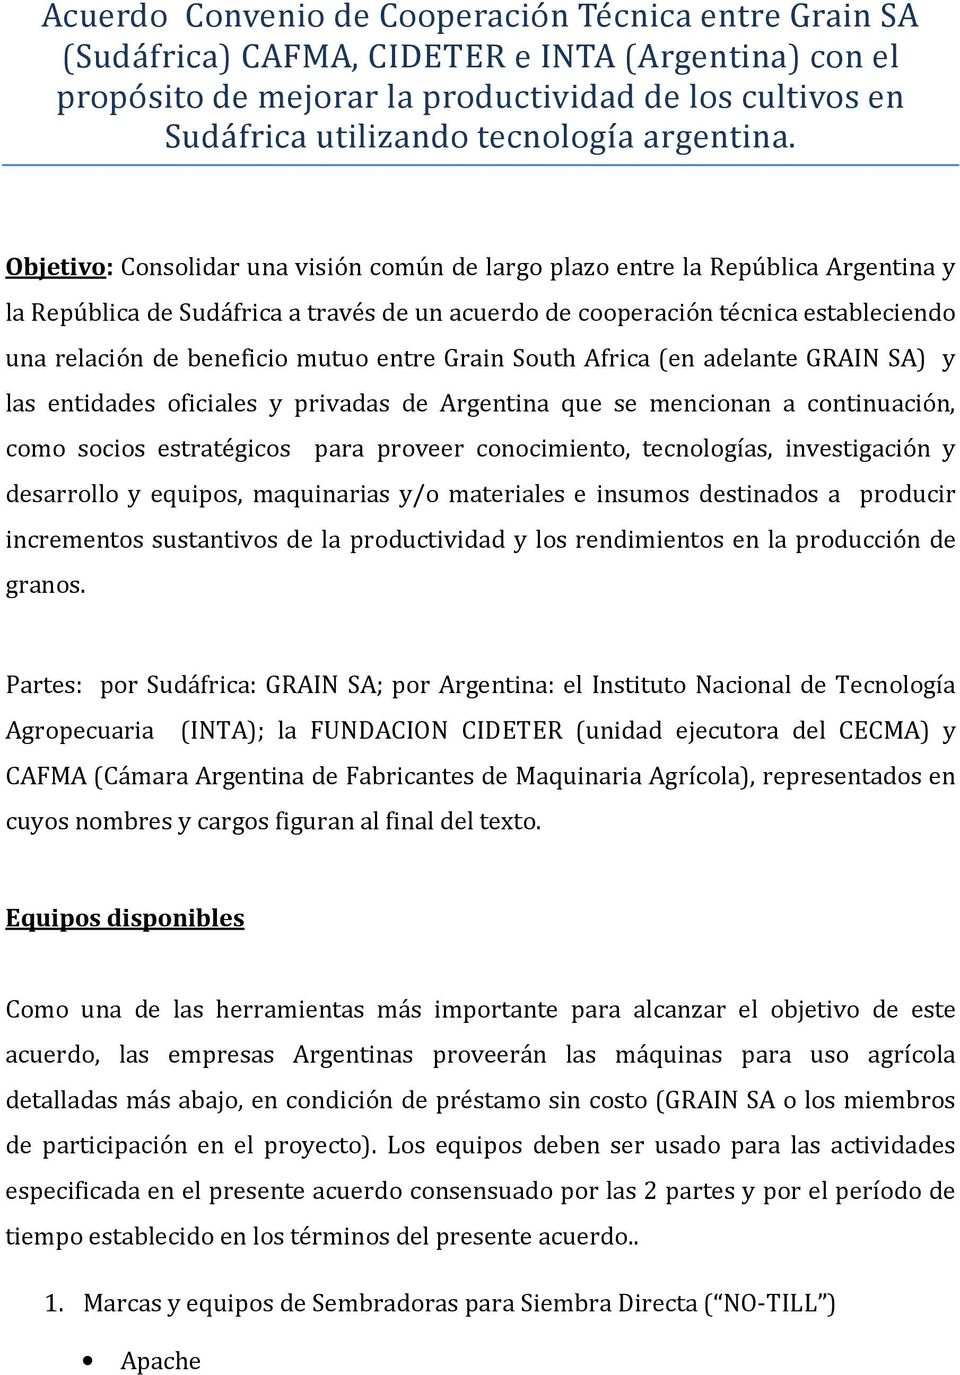 Objetivo: Consolidar una visión común de largo plazo entre la República Argentina y la República de Sudáfrica a través de un acuerdo de cooperación técnica estableciendo una relación de beneficio